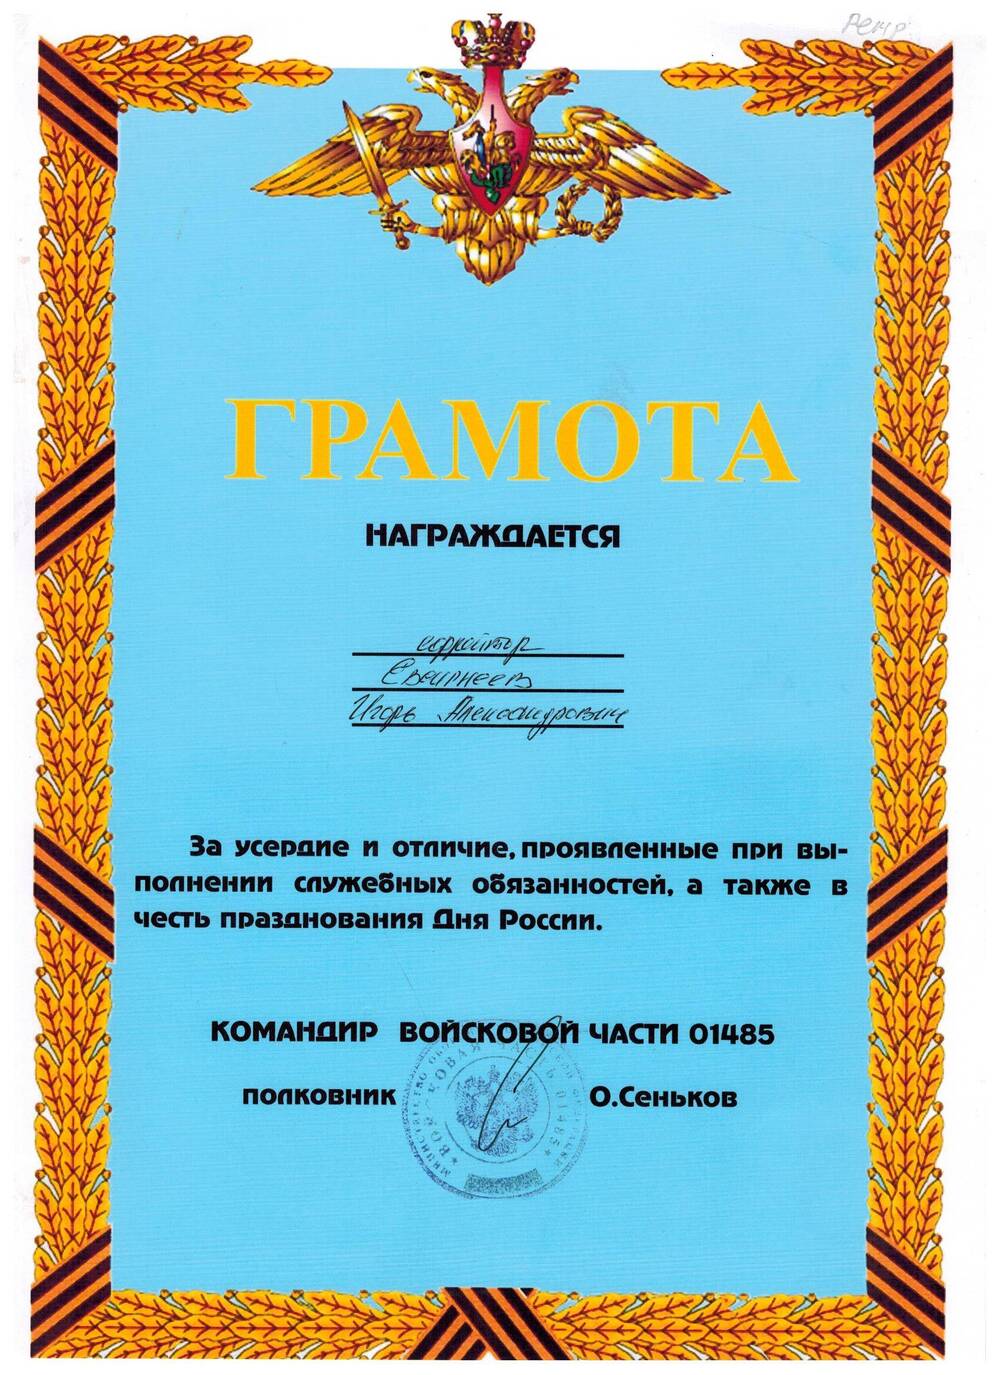 Грамота, награжден ефрейтор Евсигнеев Игорь Александрович